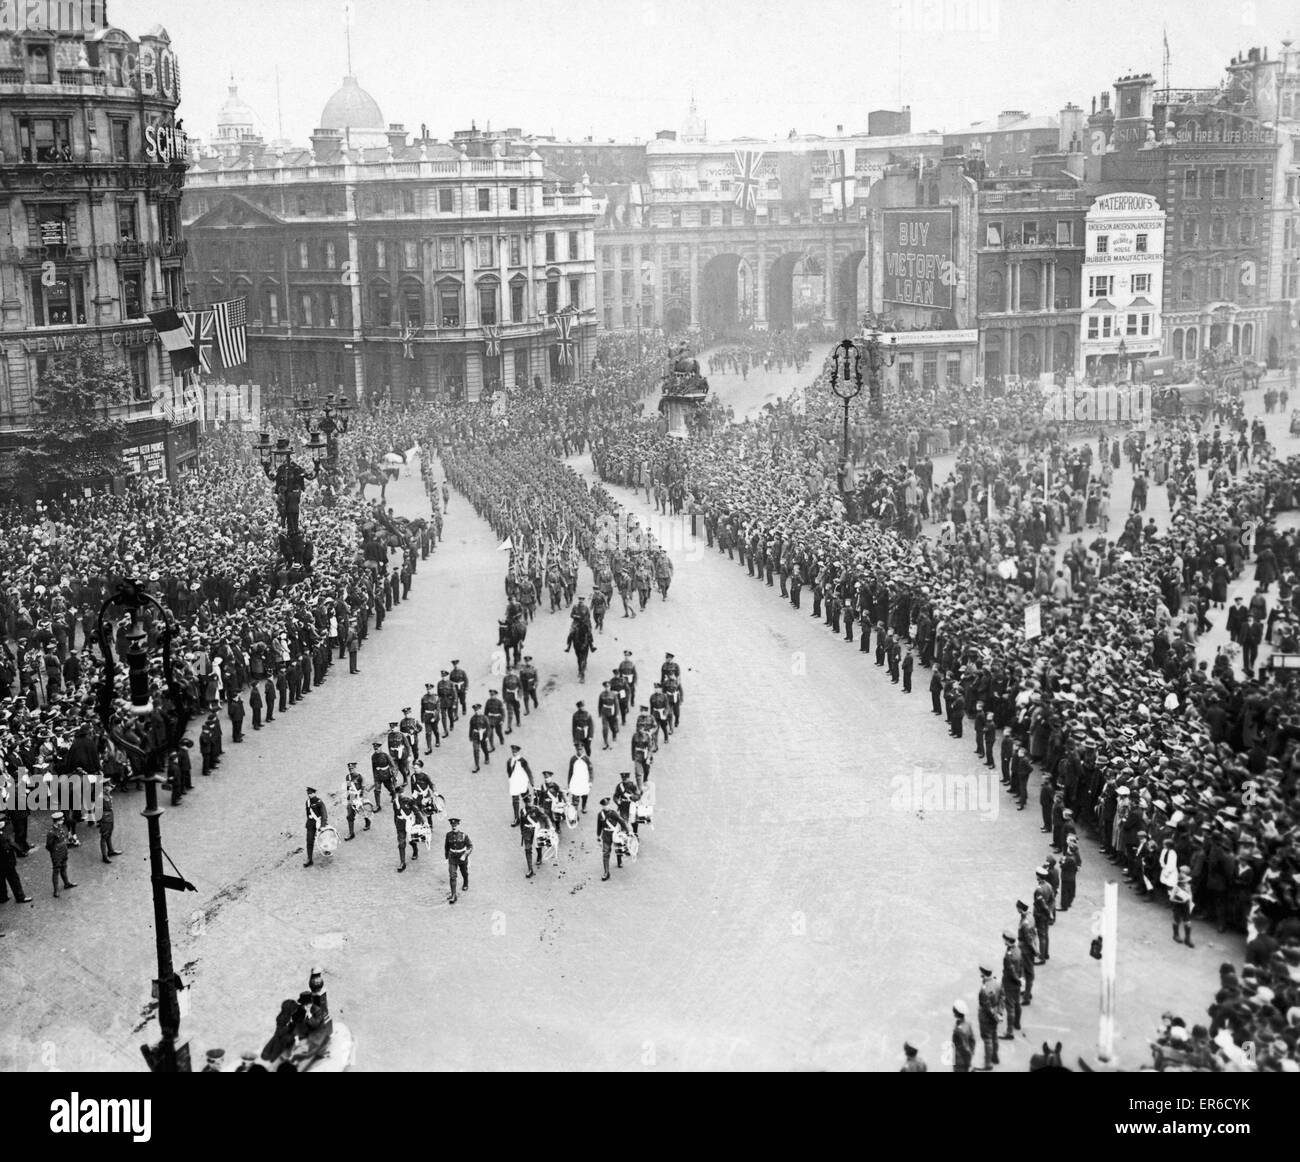 Britischen und alliierten Truppen gesehen hier März über den Trafalgar Square während der Siegesparade zum Ende des ersten Weltkrieges am 19. Juli 1919 feiern Stockfoto